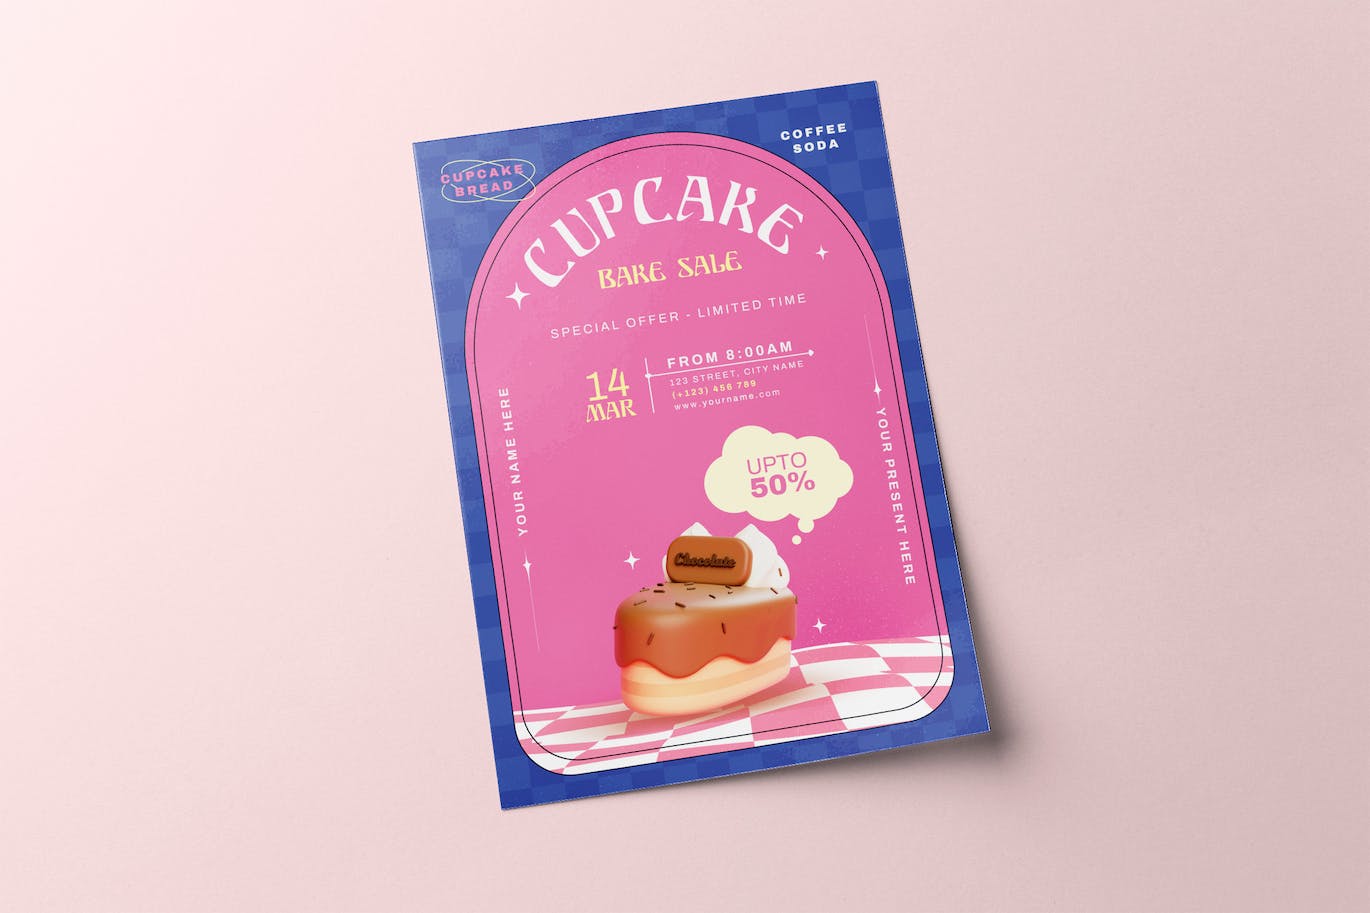 纸杯蛋糕烘焙销售海报模板 Cupcake Bake Sale Flyer 设计素材 第1张